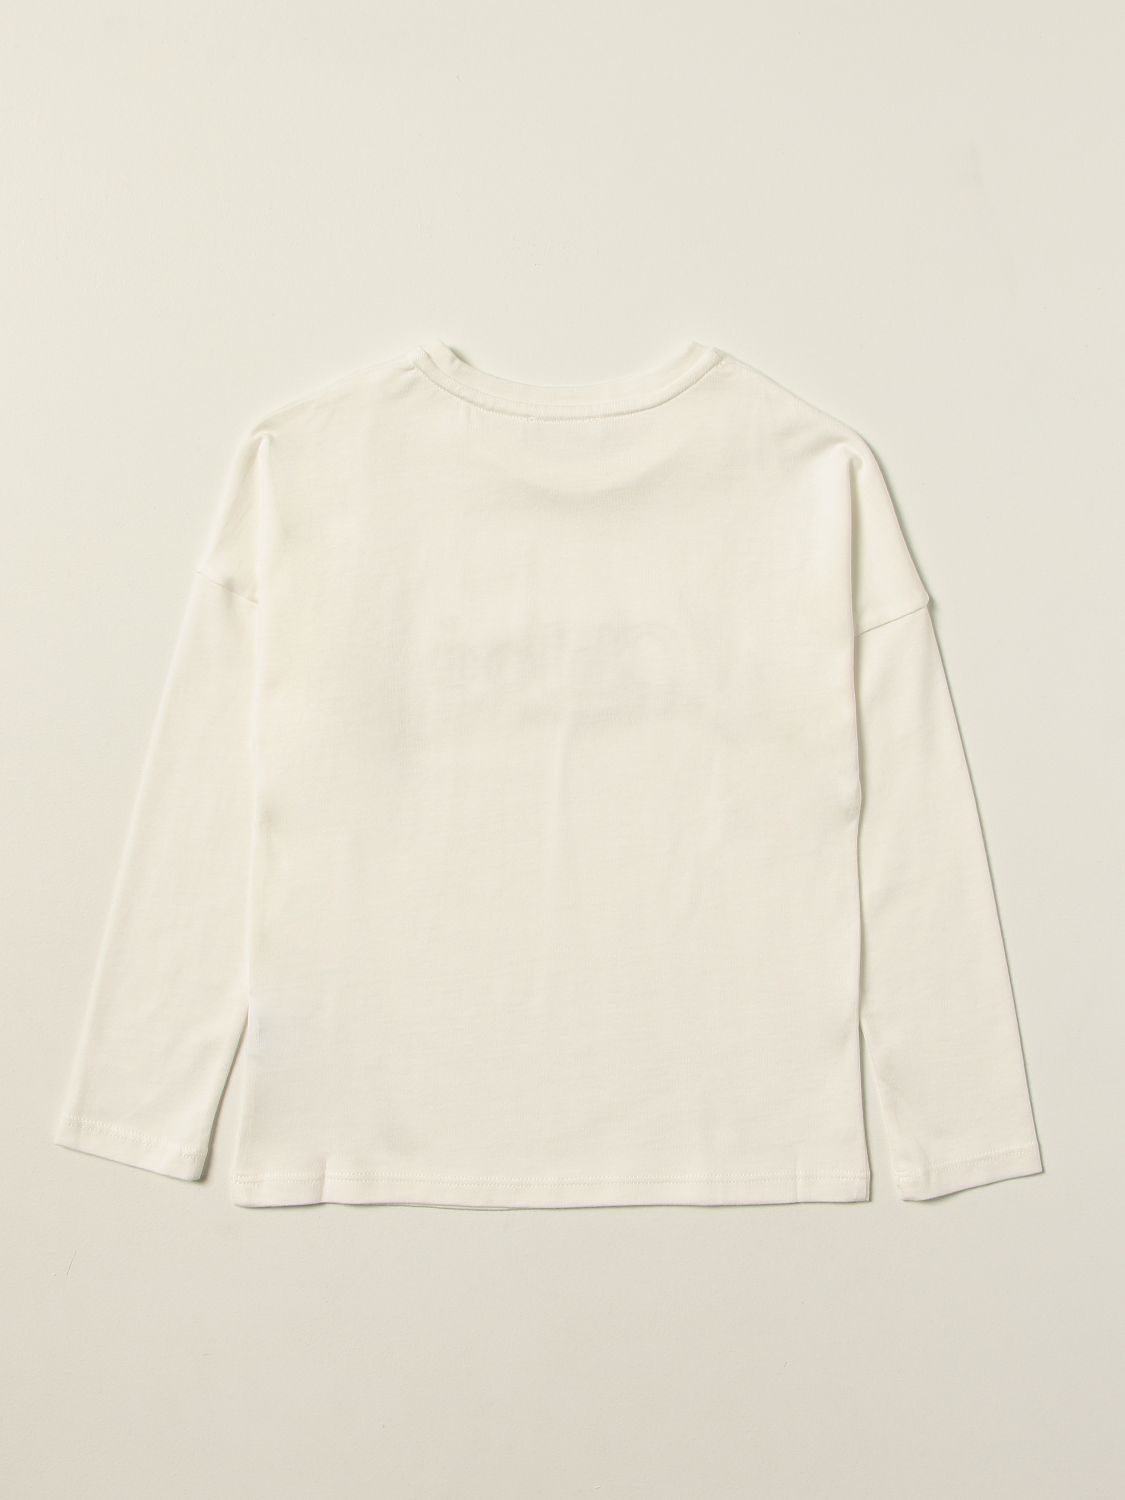 T恤 Chloé: T恤 儿童 ChloÉ 白色 2